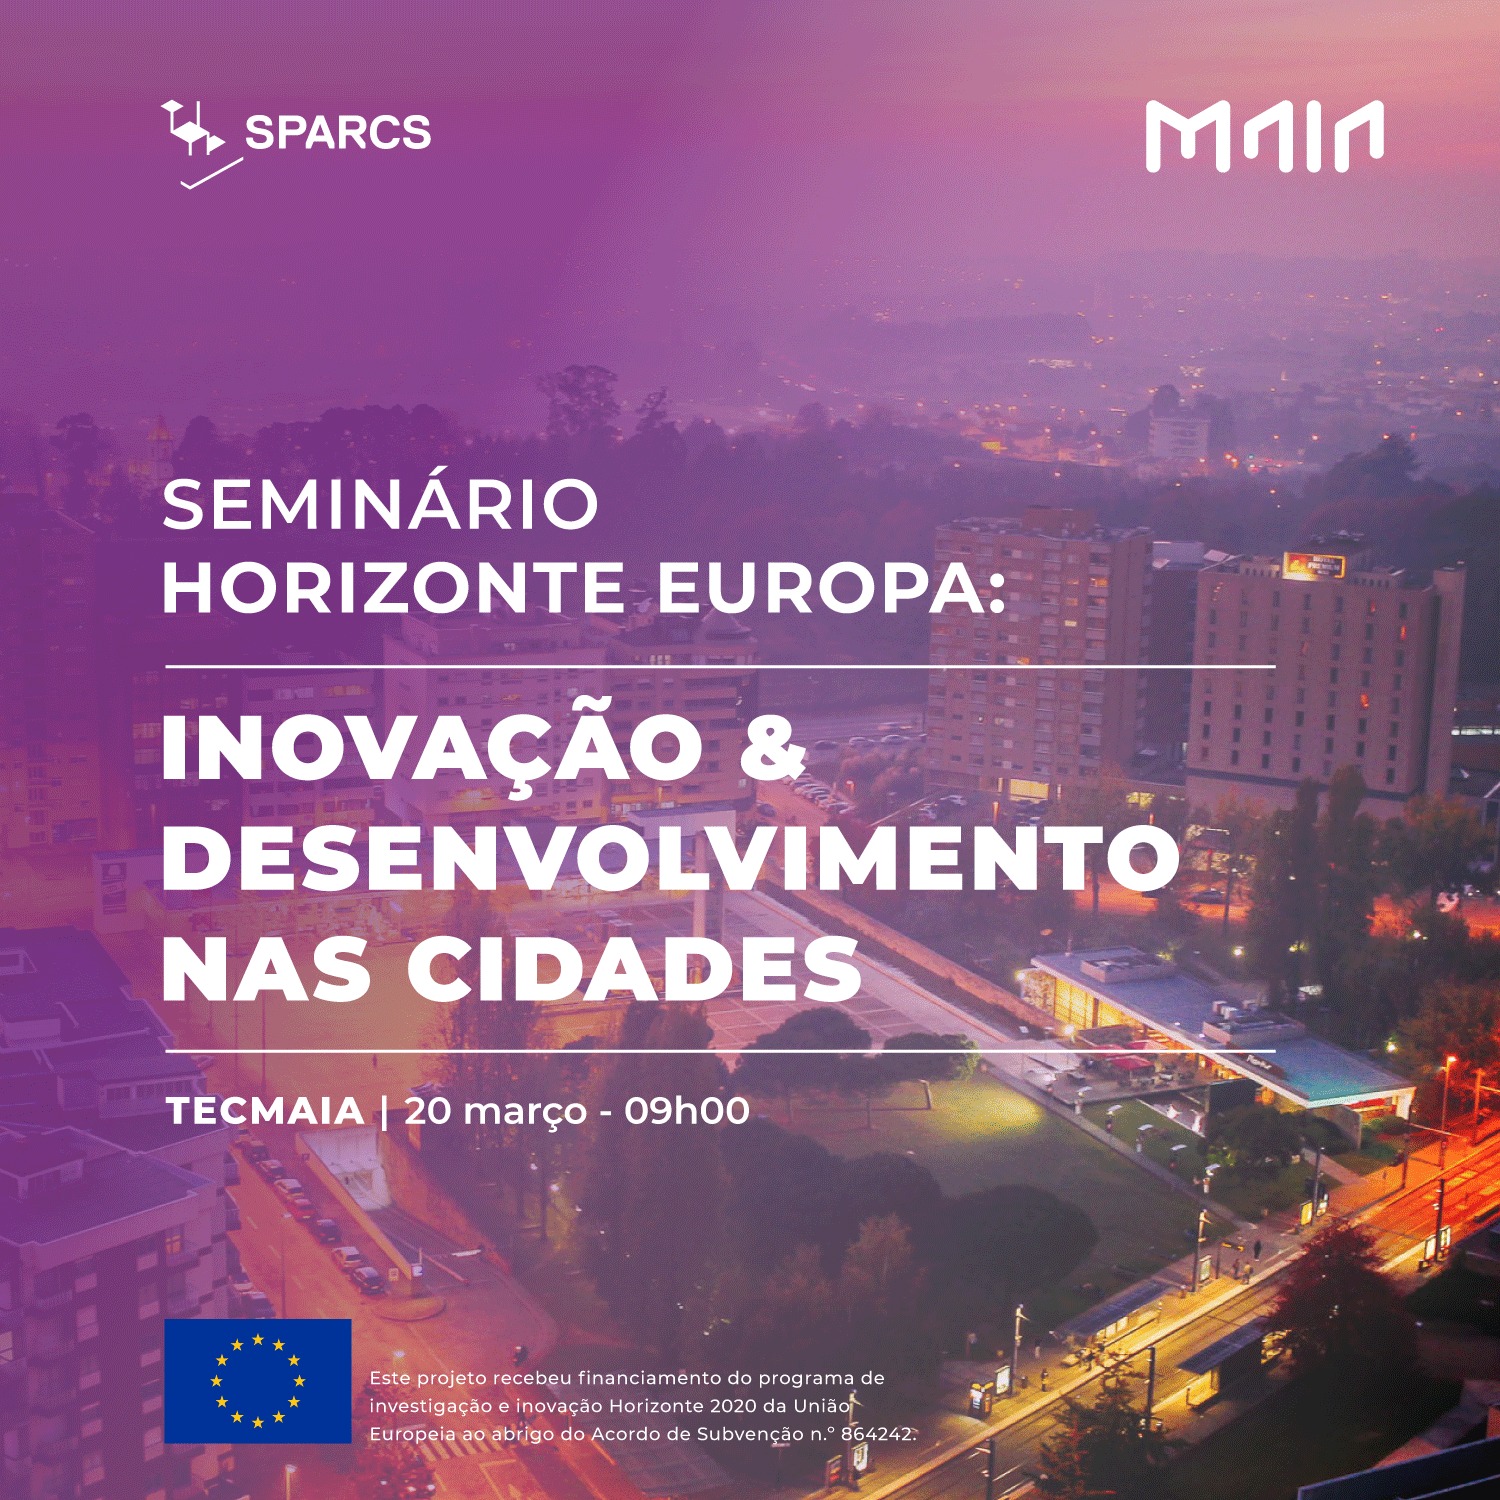 Seminário "Inovação e Desenvolvimento nas Cidades"